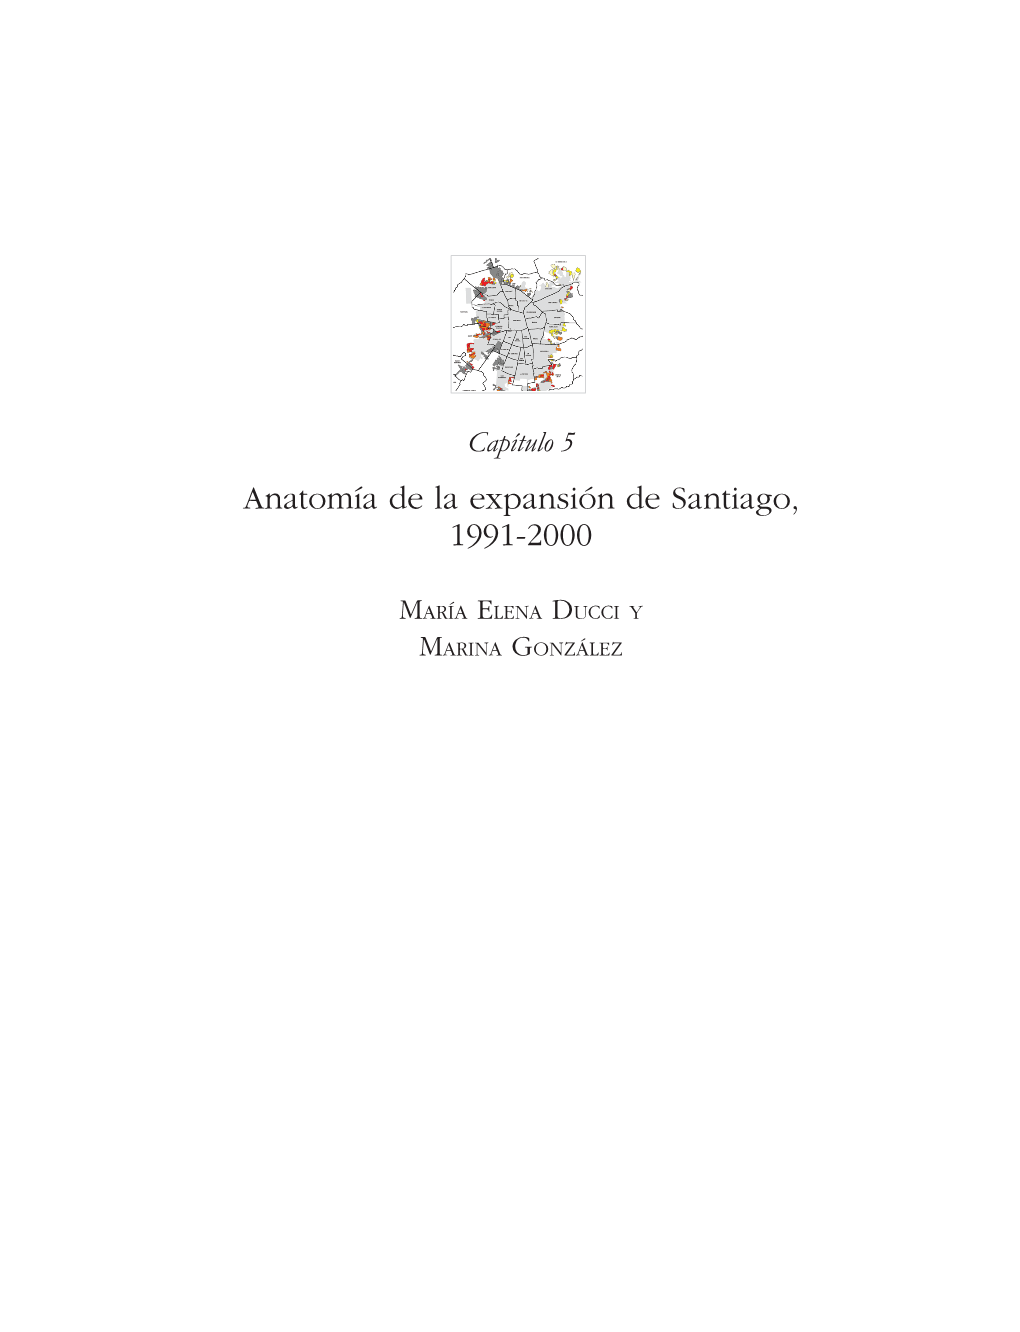 Capítulo 5 Anatomía De La Expansión De Santiago, 1991-2000